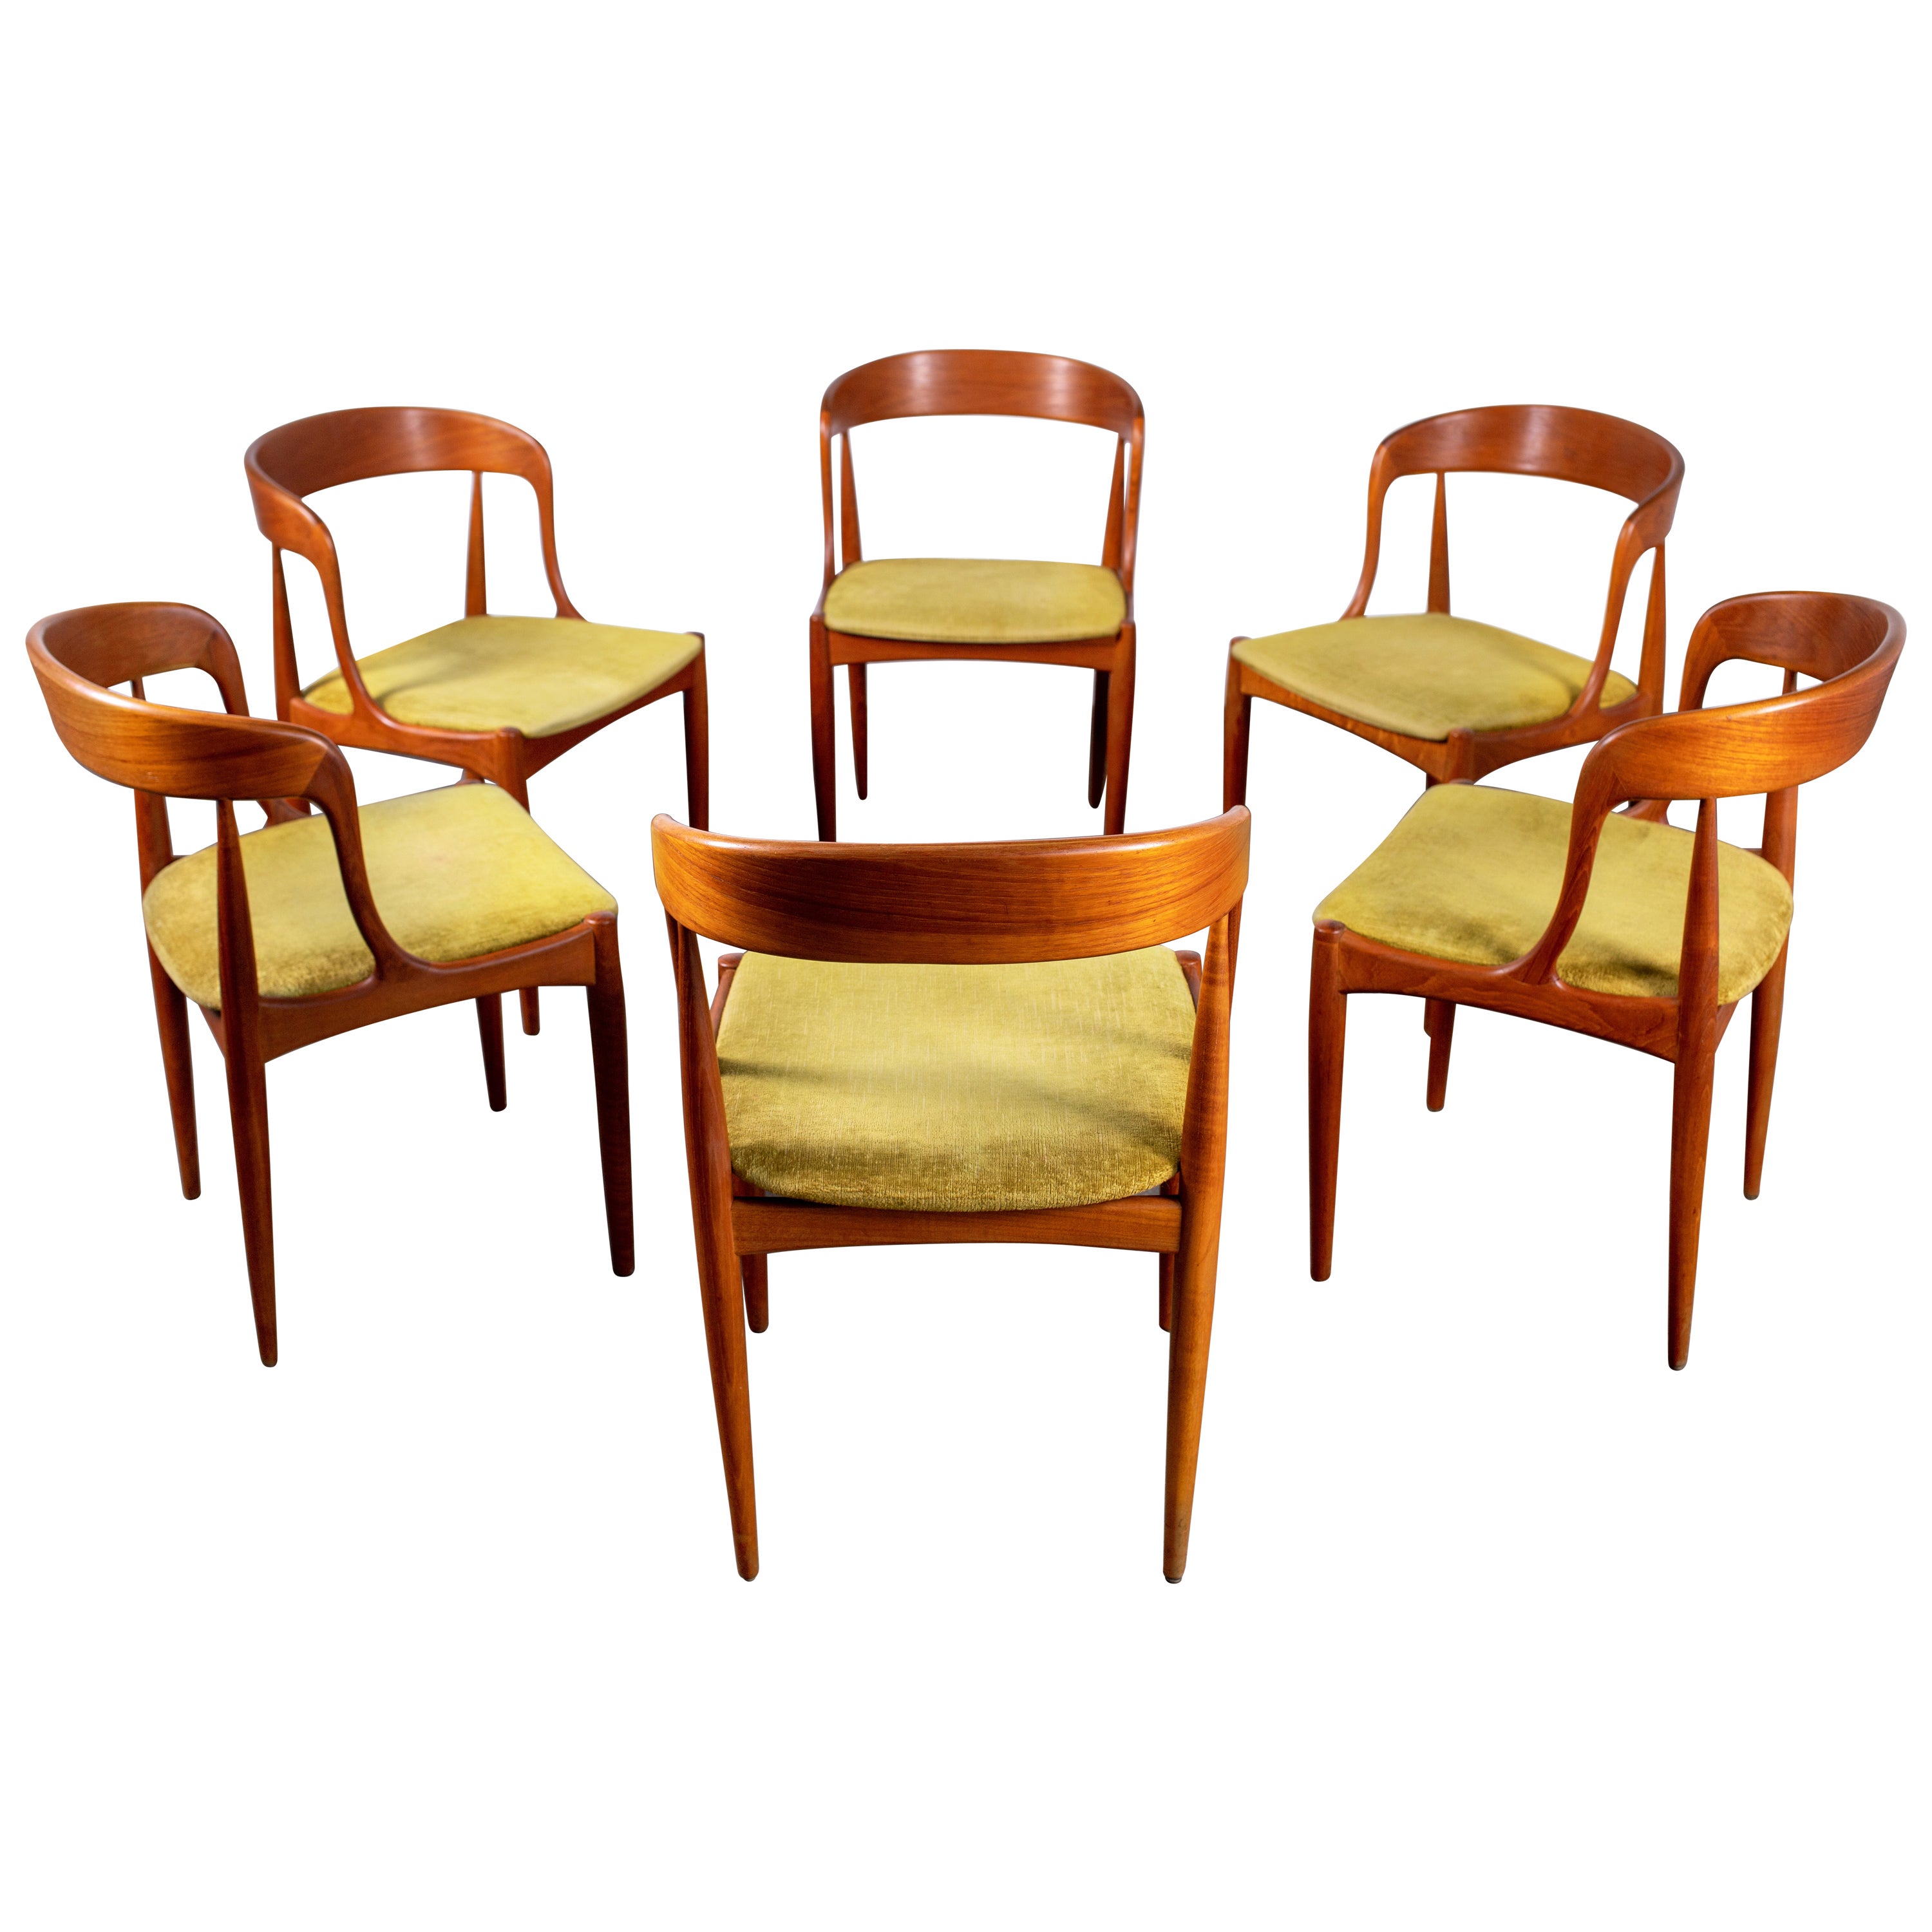 1960s Teak Johannes Andersen Dining Chairs for Uldum Denmark, Set of 6 For Sale